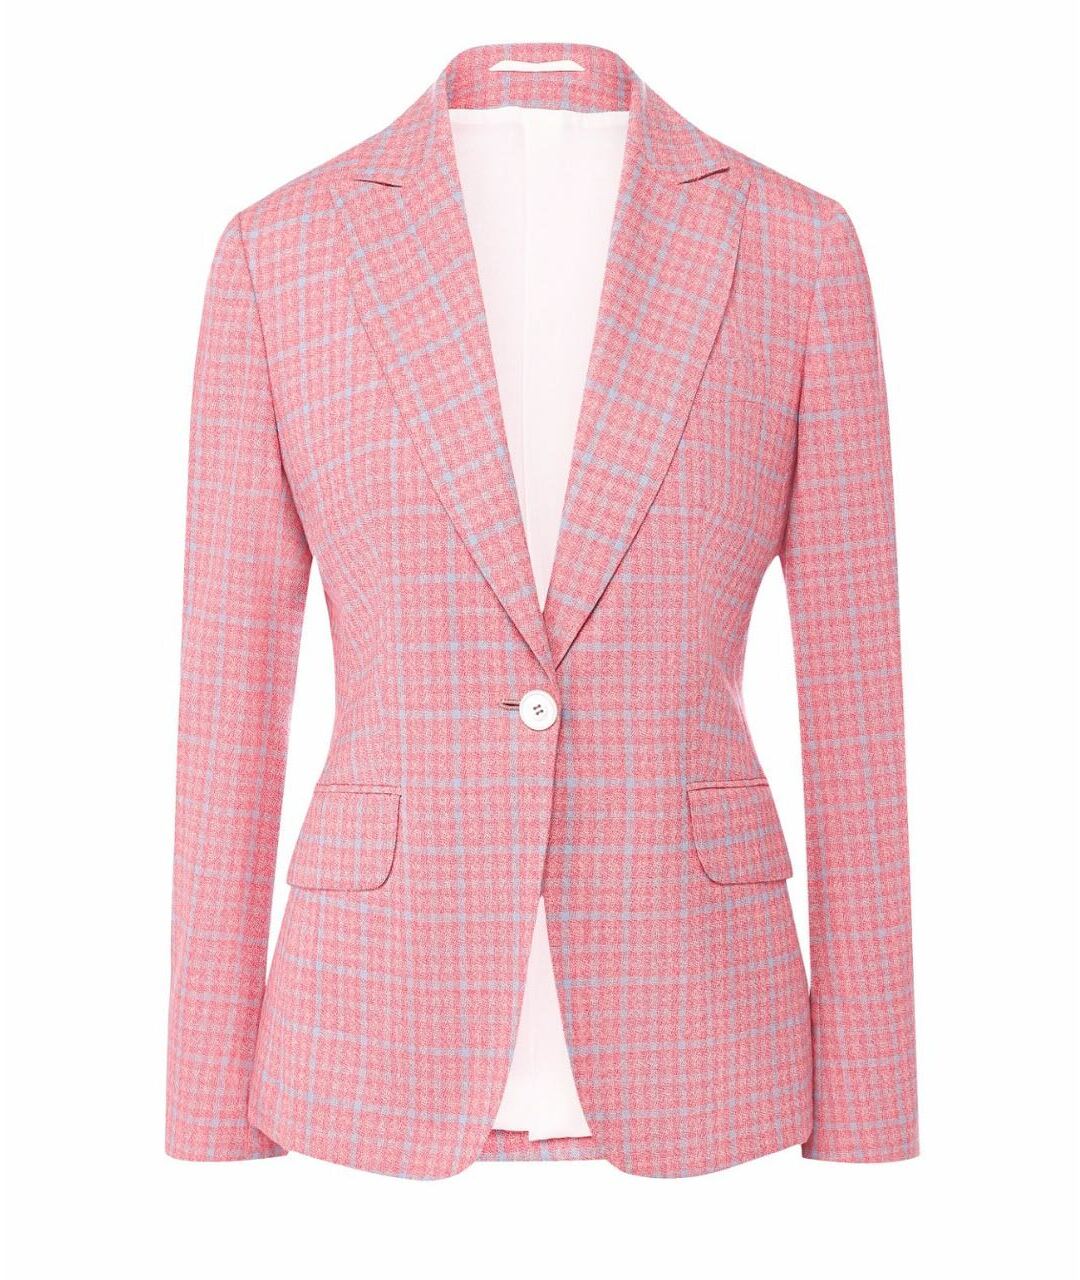 KITON Розовый кашемировый жакет/пиджак, фото 1